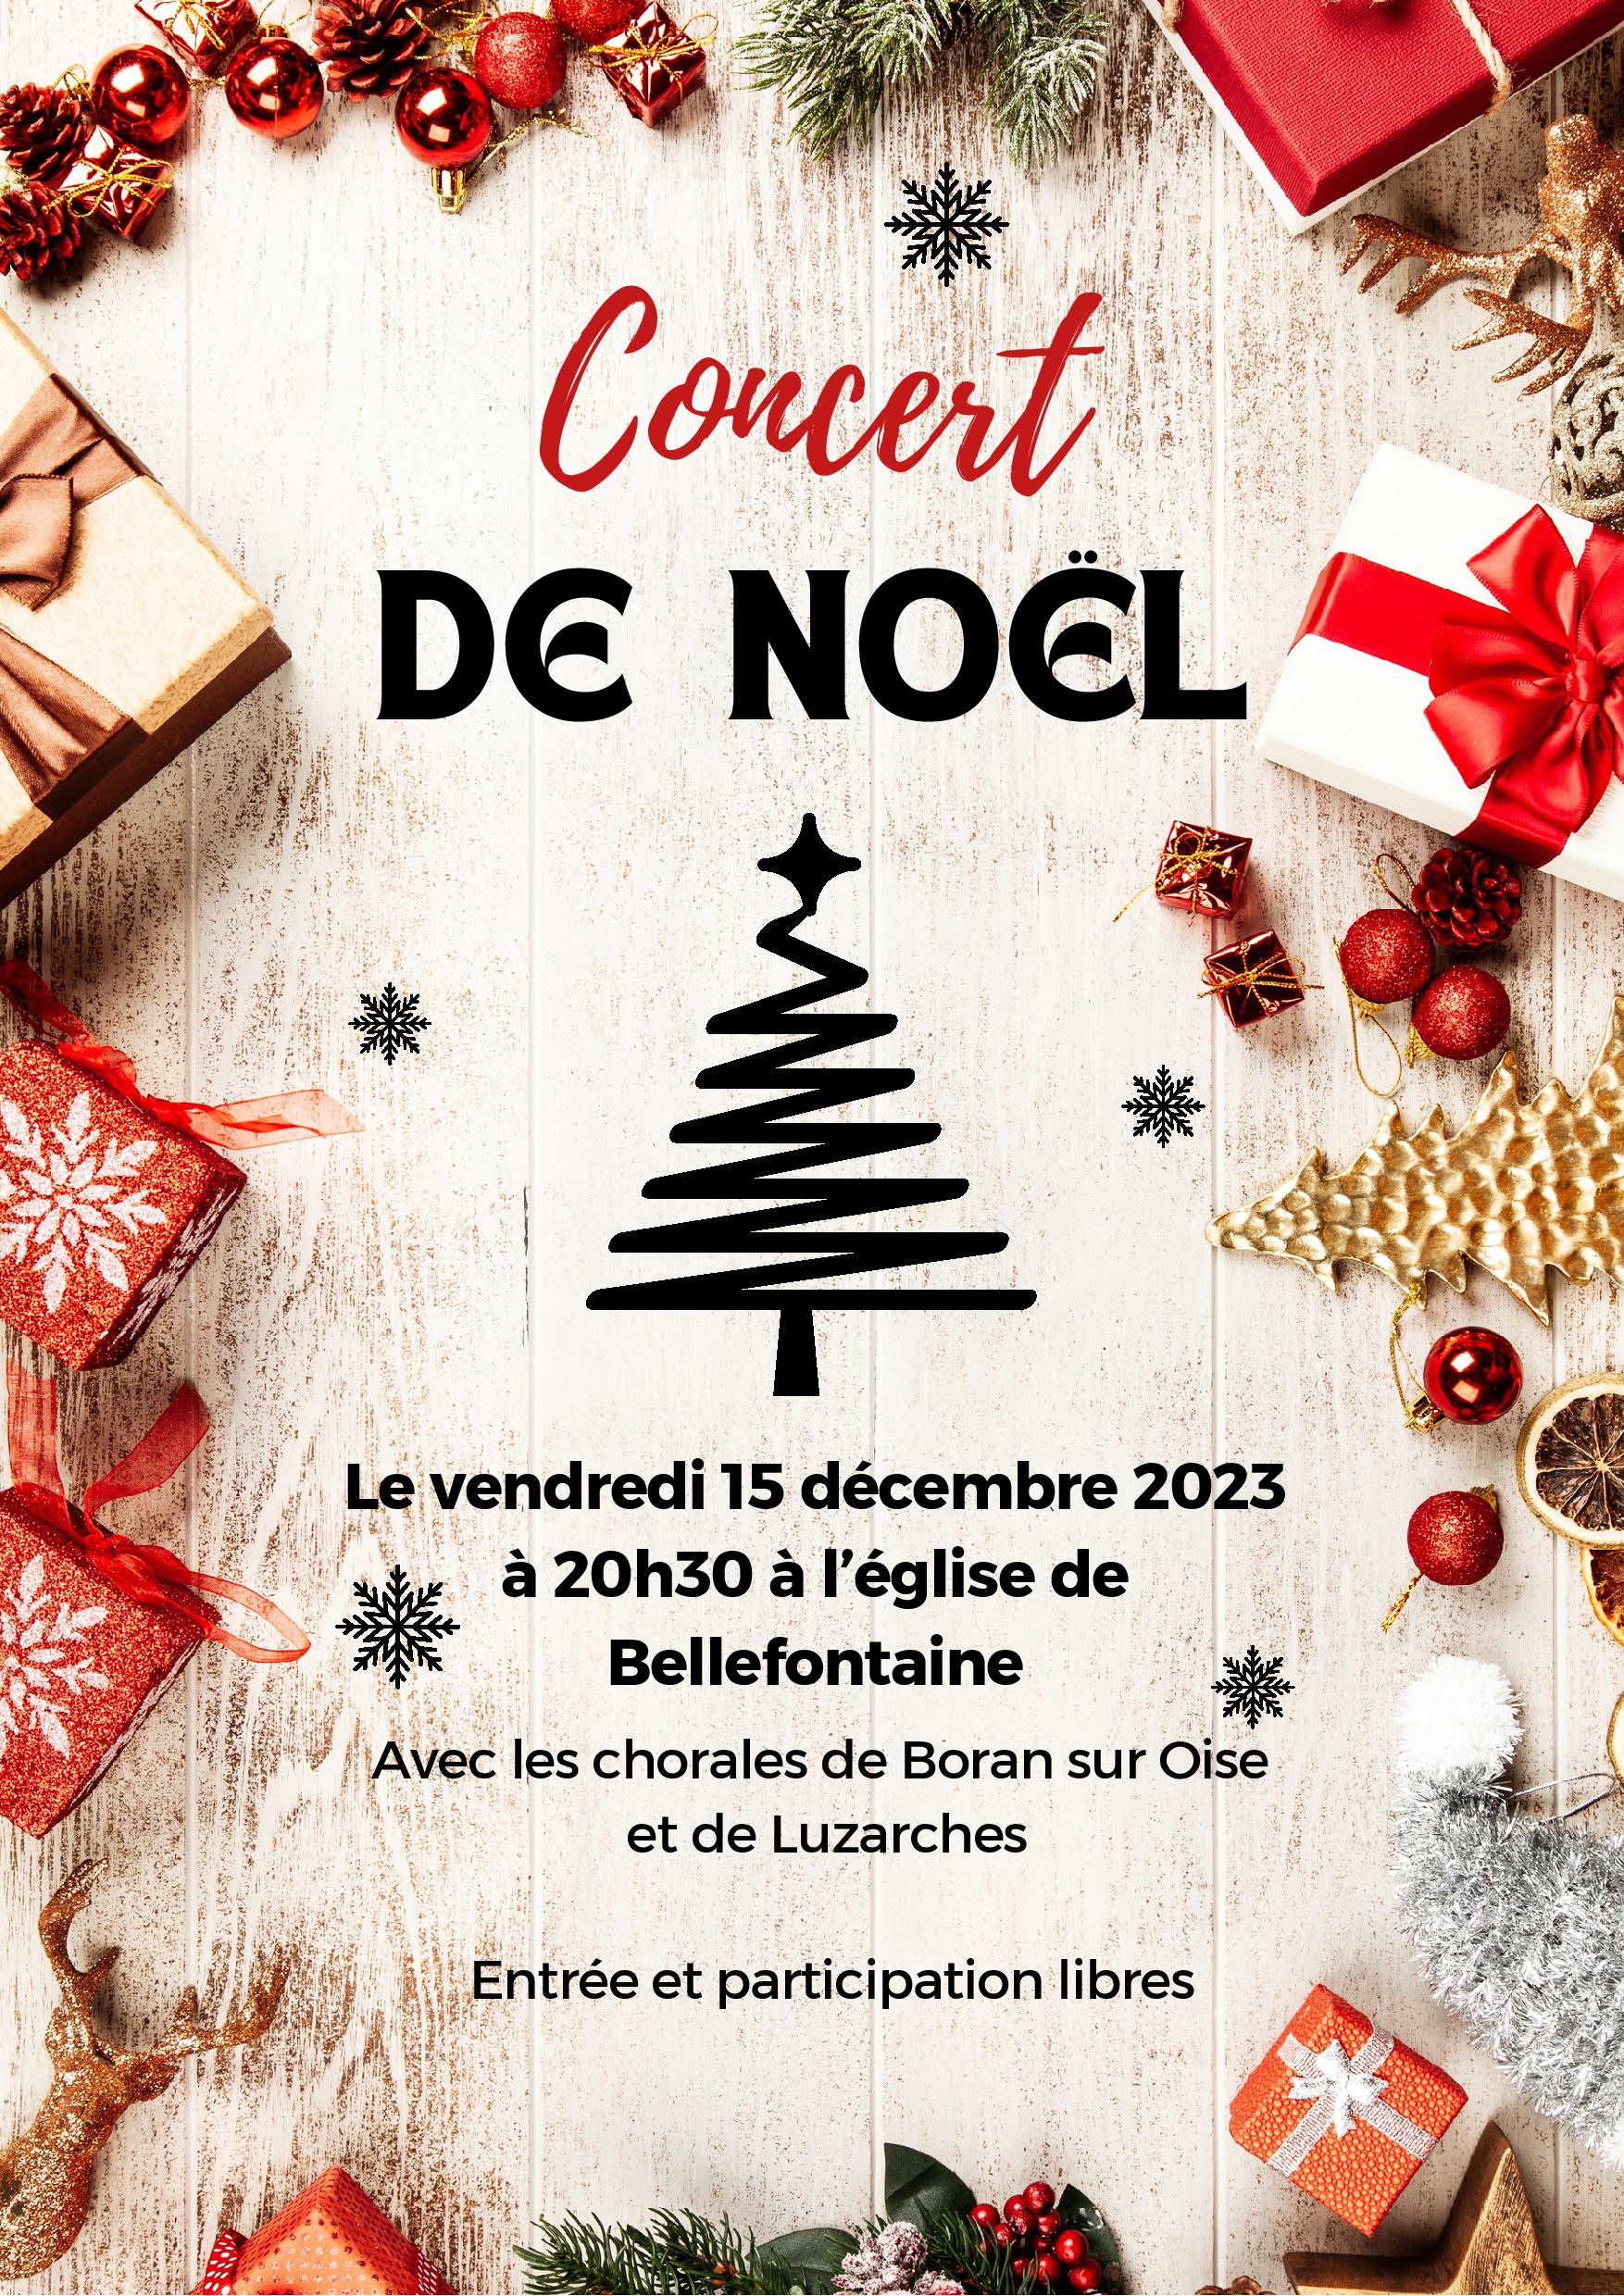 Chants de Noël 2023 : 65 concerts gratuits dans tout le Département en  décembre - Du 02/12/2023 au 22/12/2023 - Bouches du Rhône 